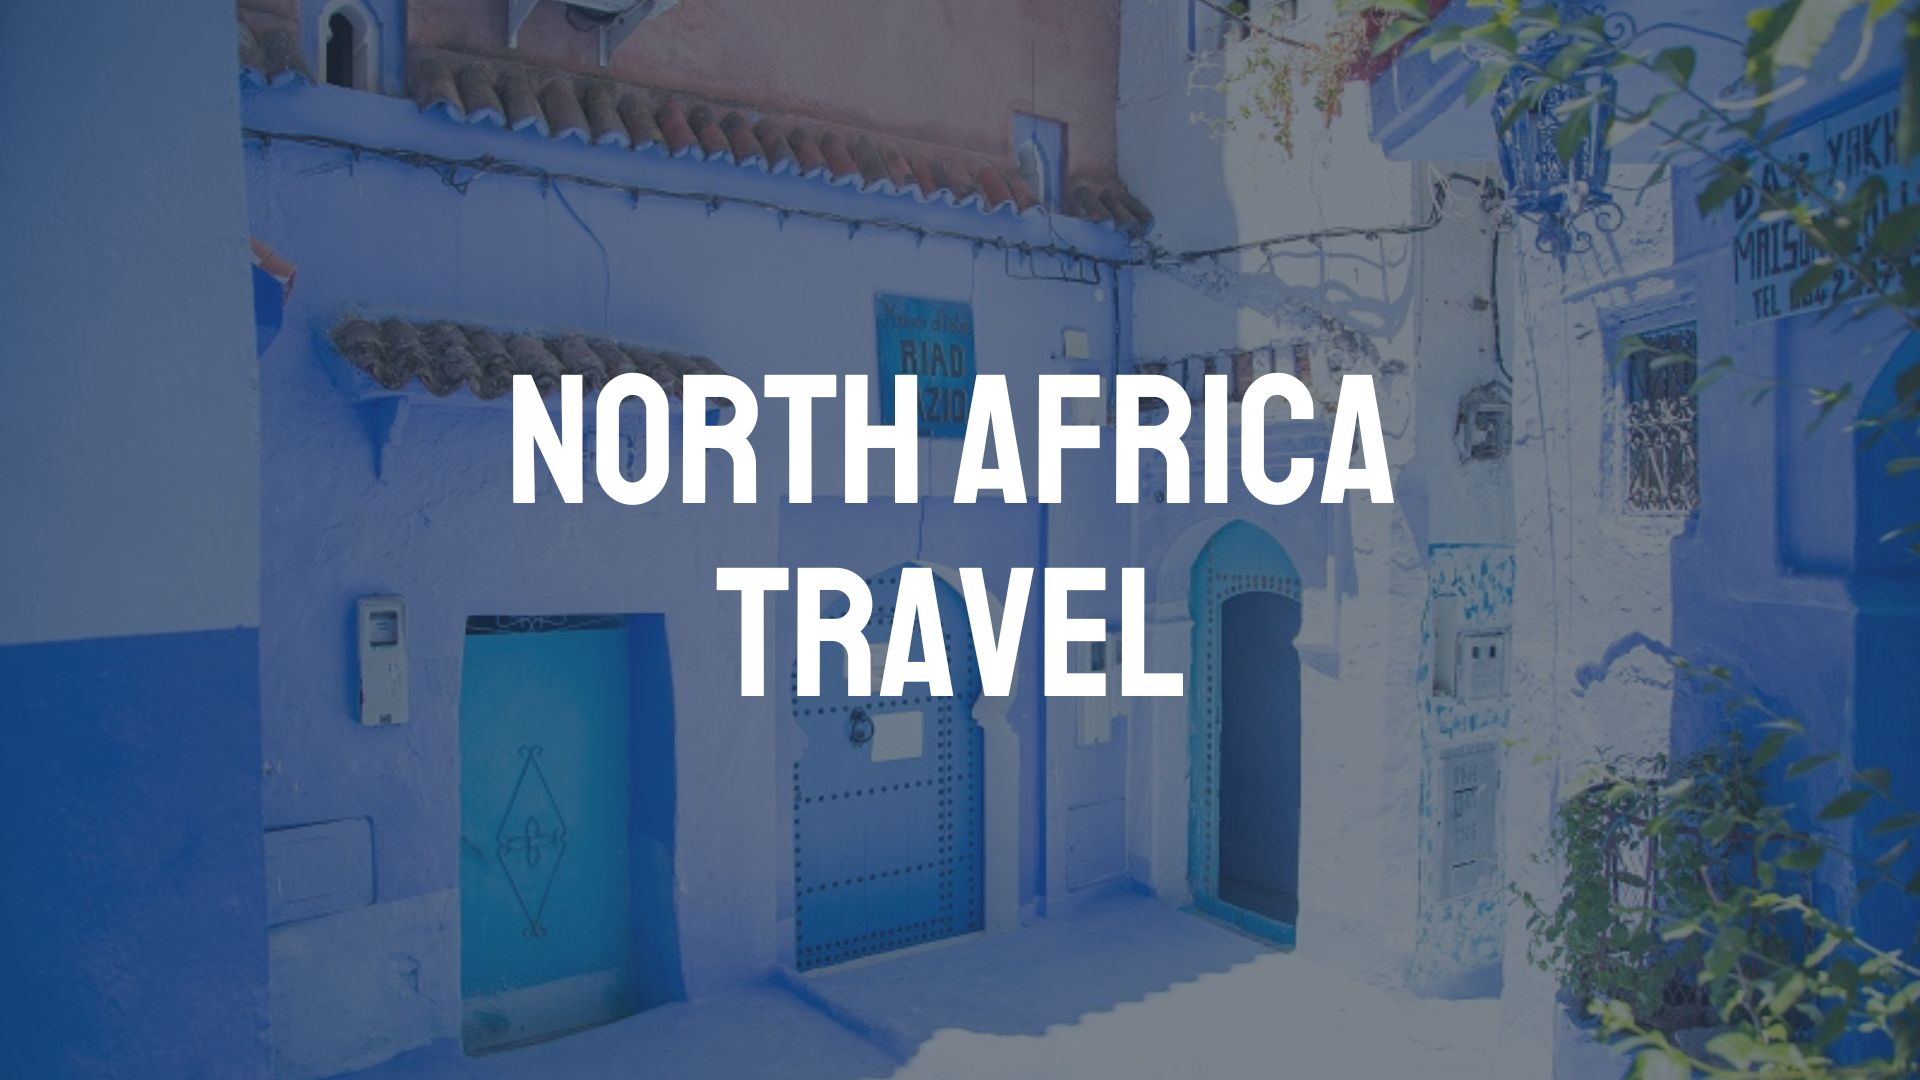 North Africa Travel Destination